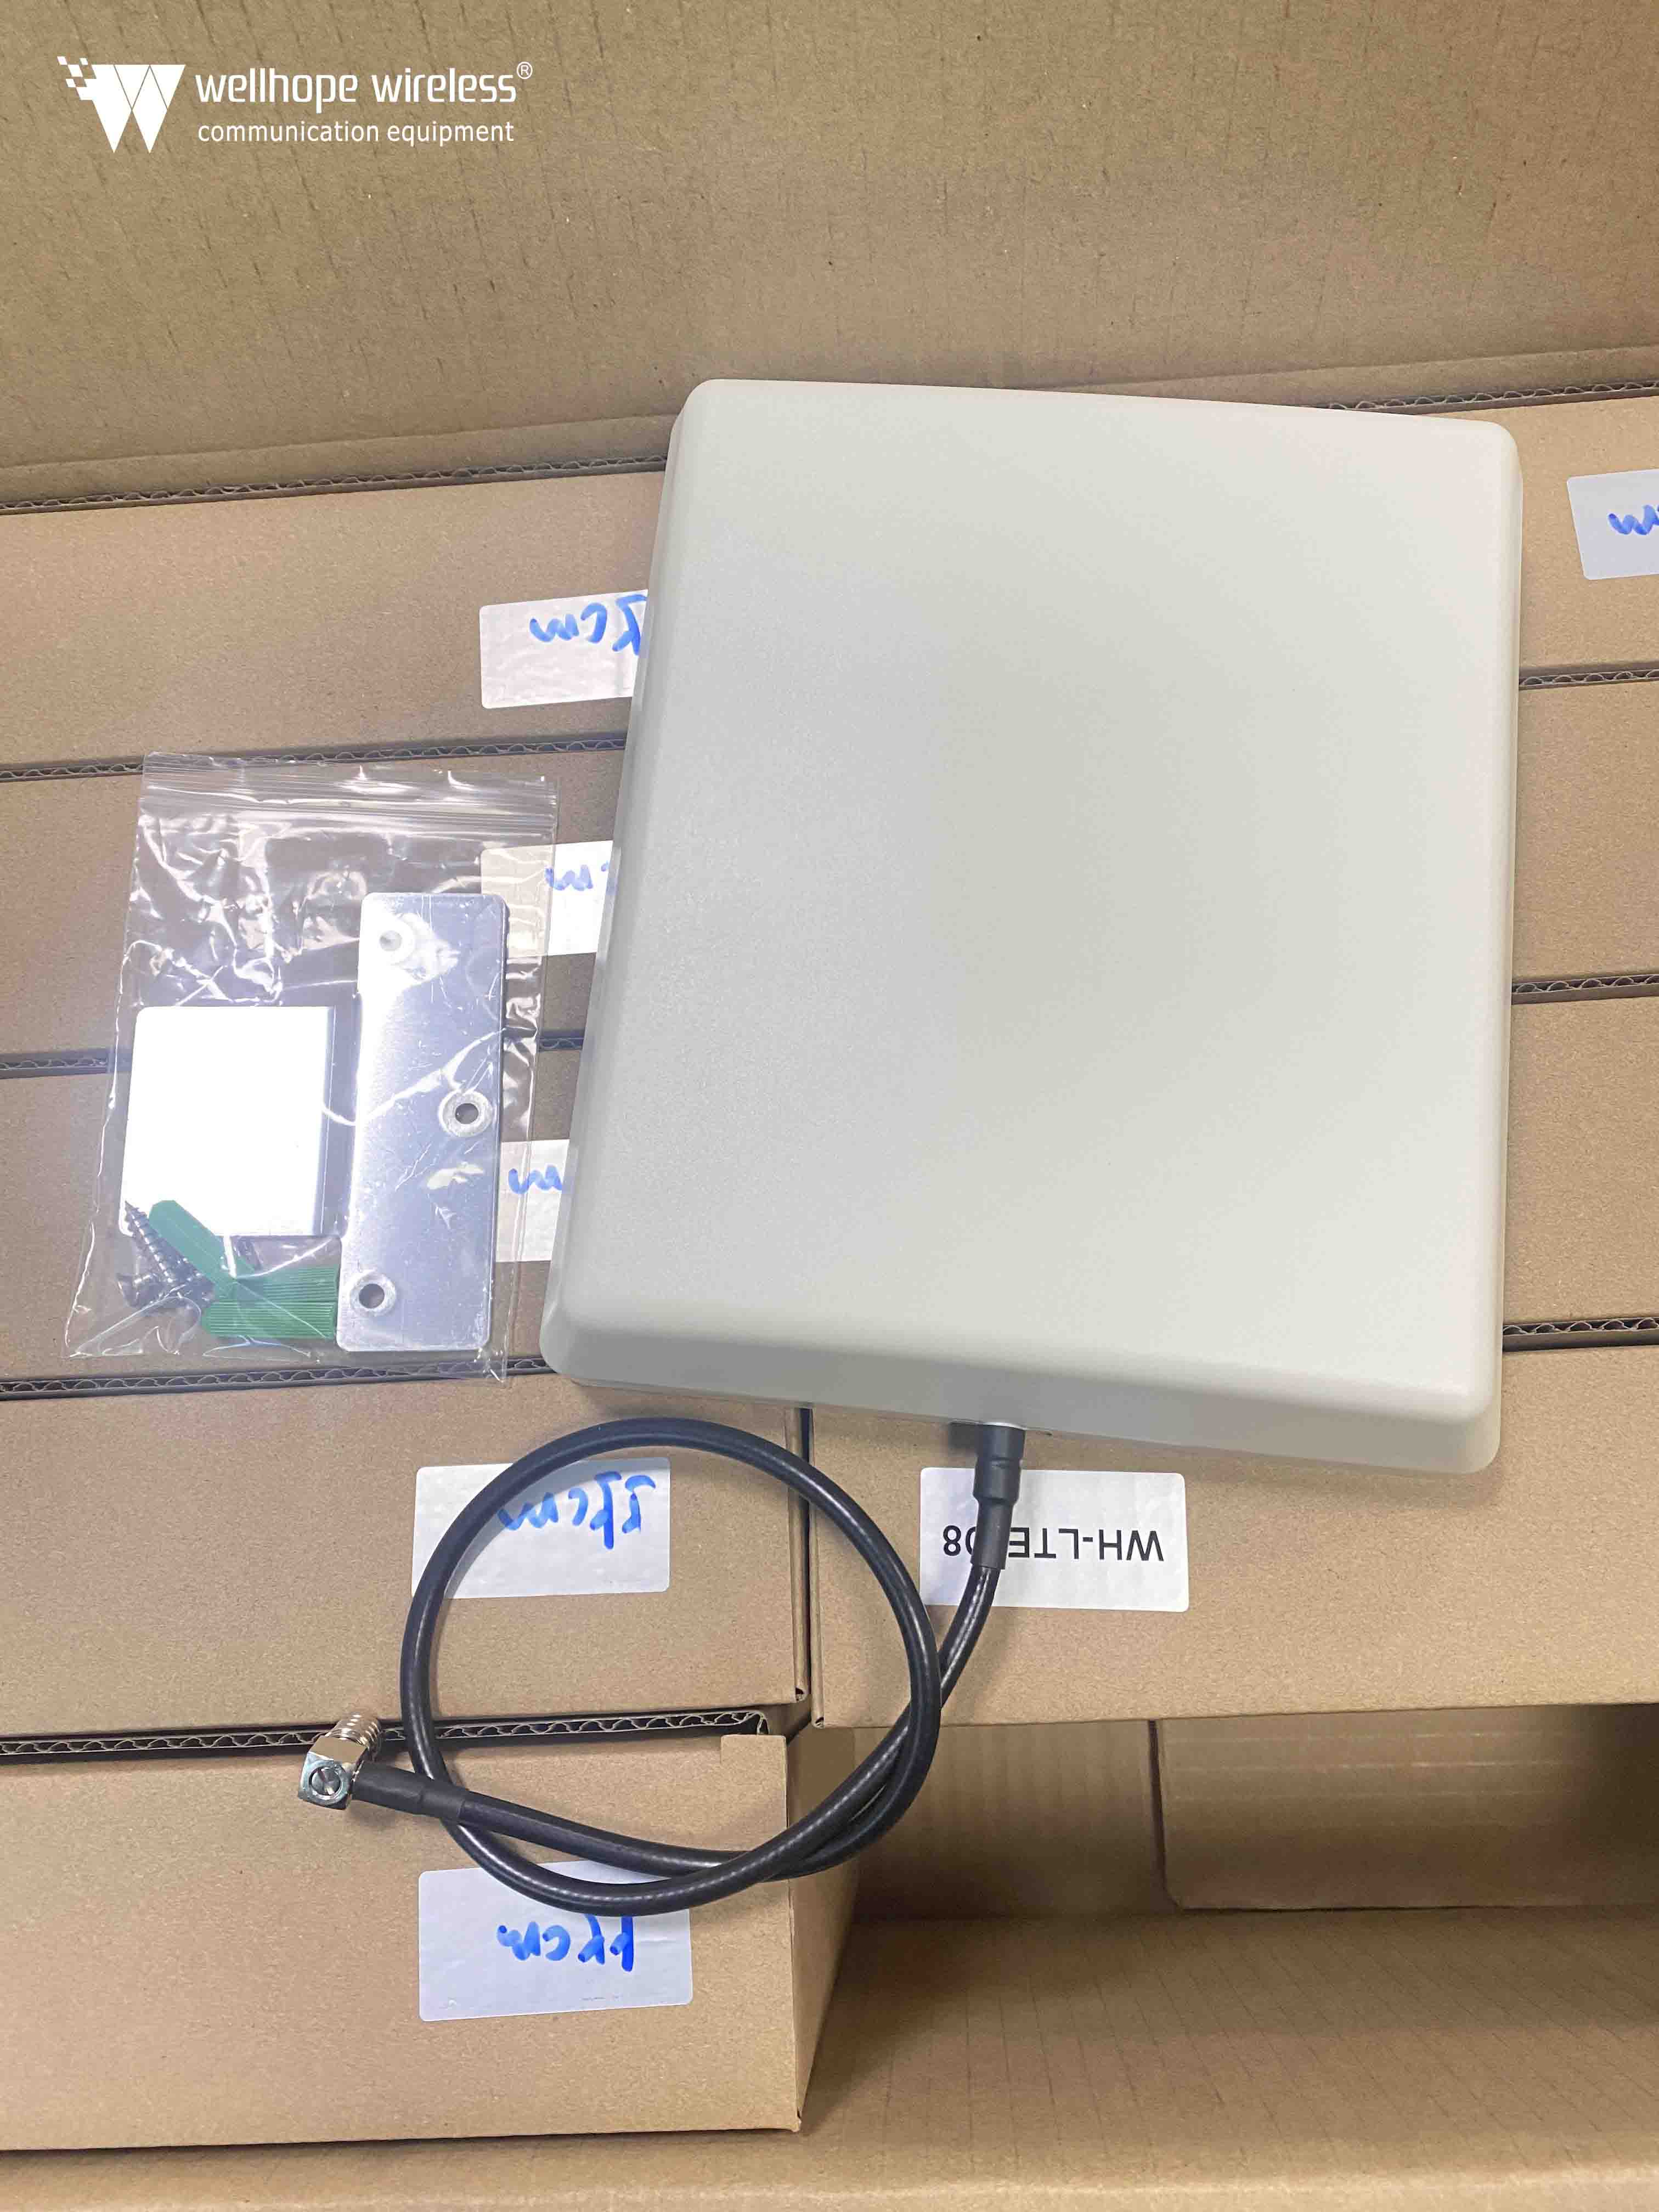 2021-11-22 Antena de panel de conexión 4G Cable R223 Conector QMA WH-LTE-D8 están listos